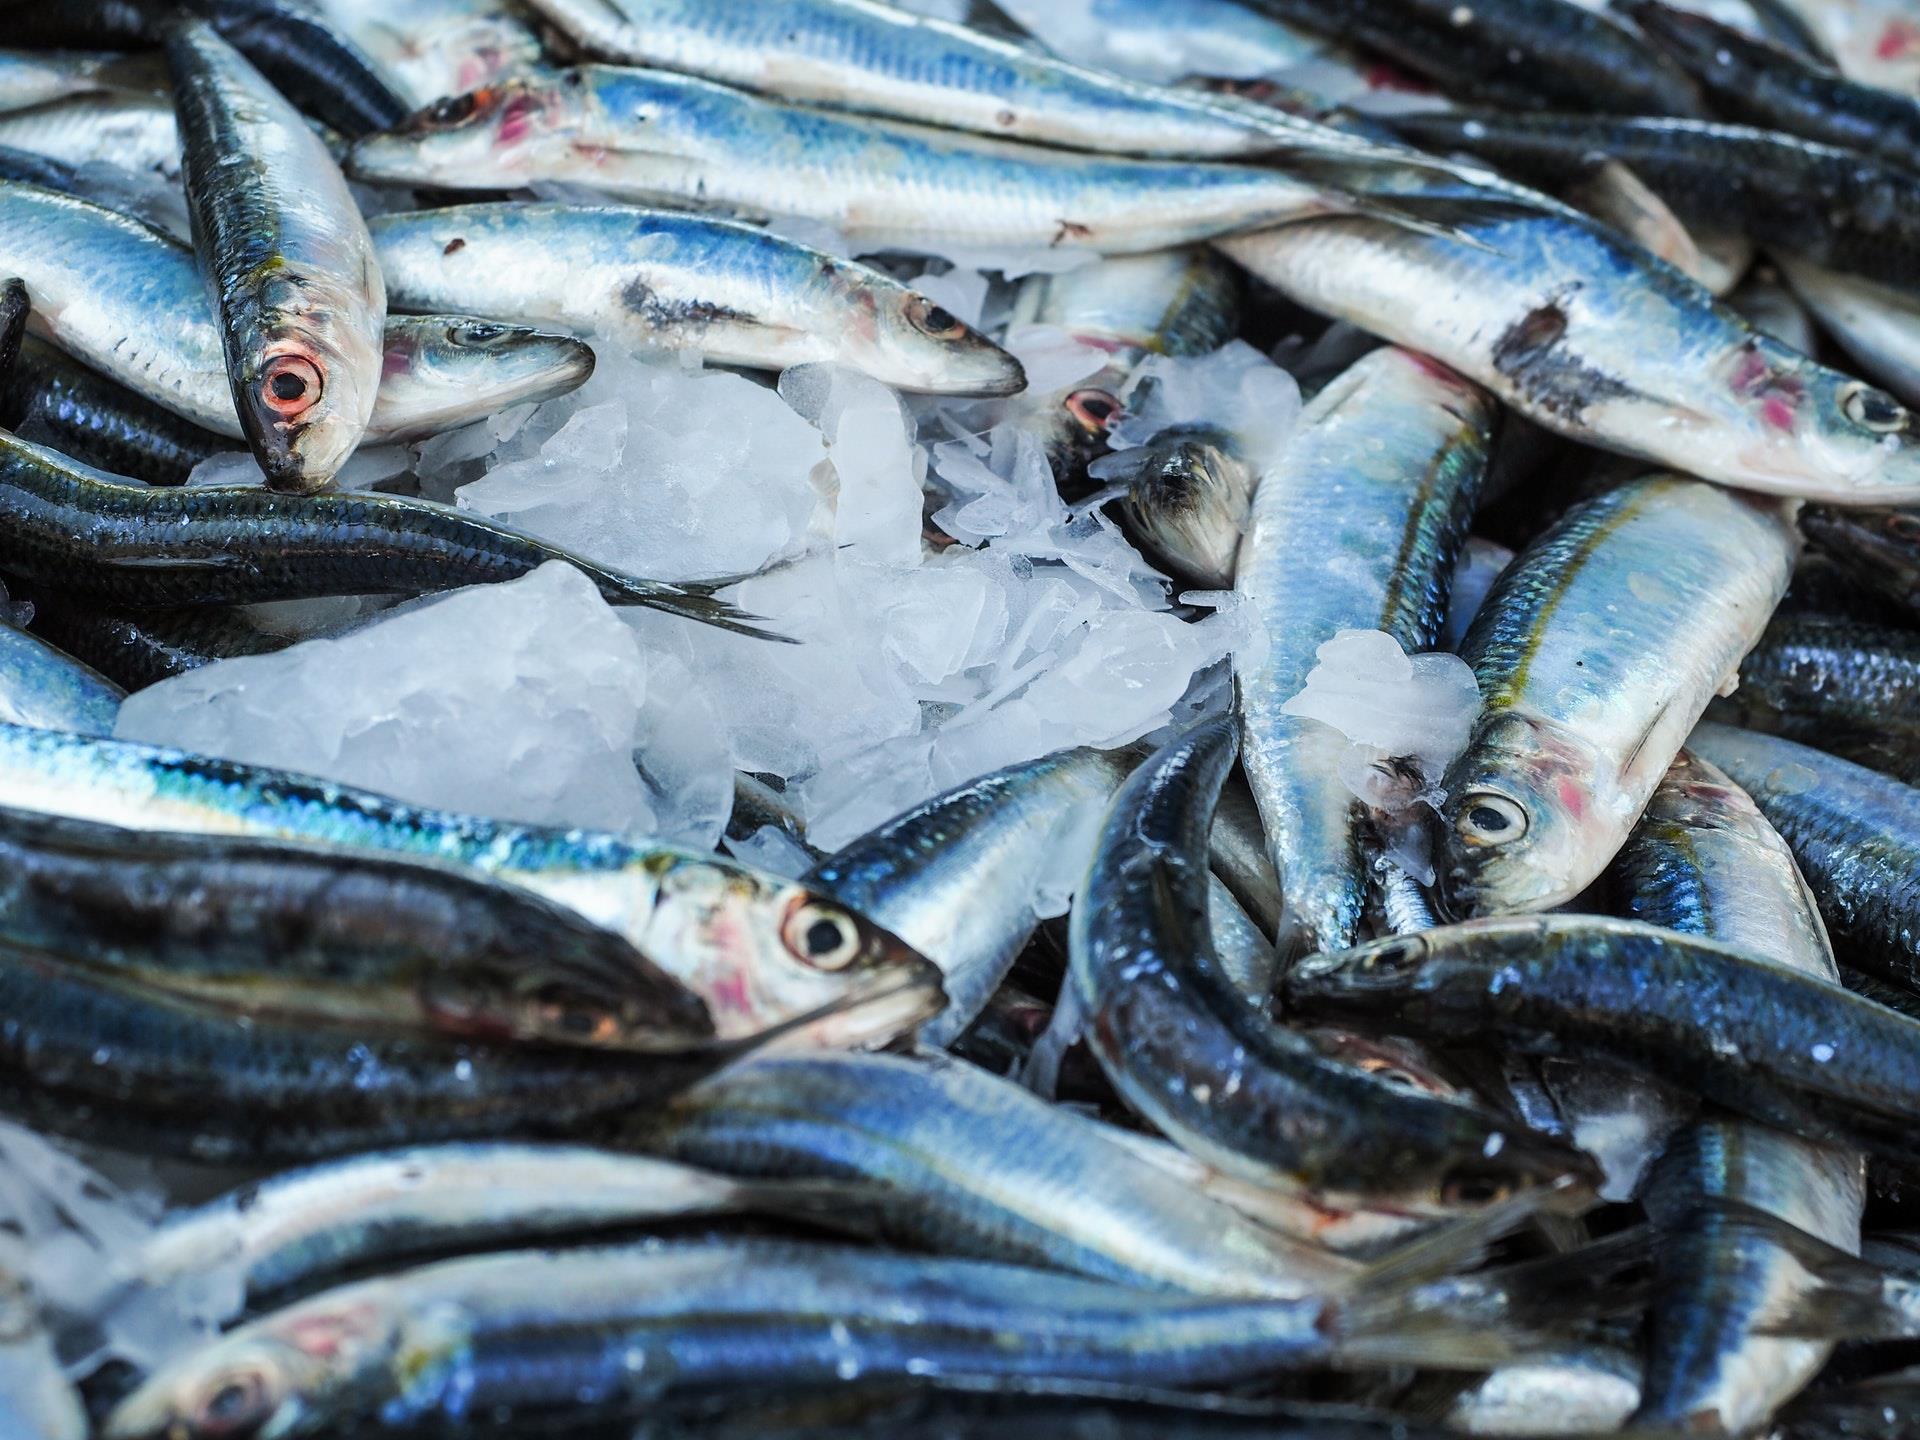 أسماك السردين أصبحت أصغر حجماً بفعل تأثير التغيرات البيئية على نظامها الغذائي